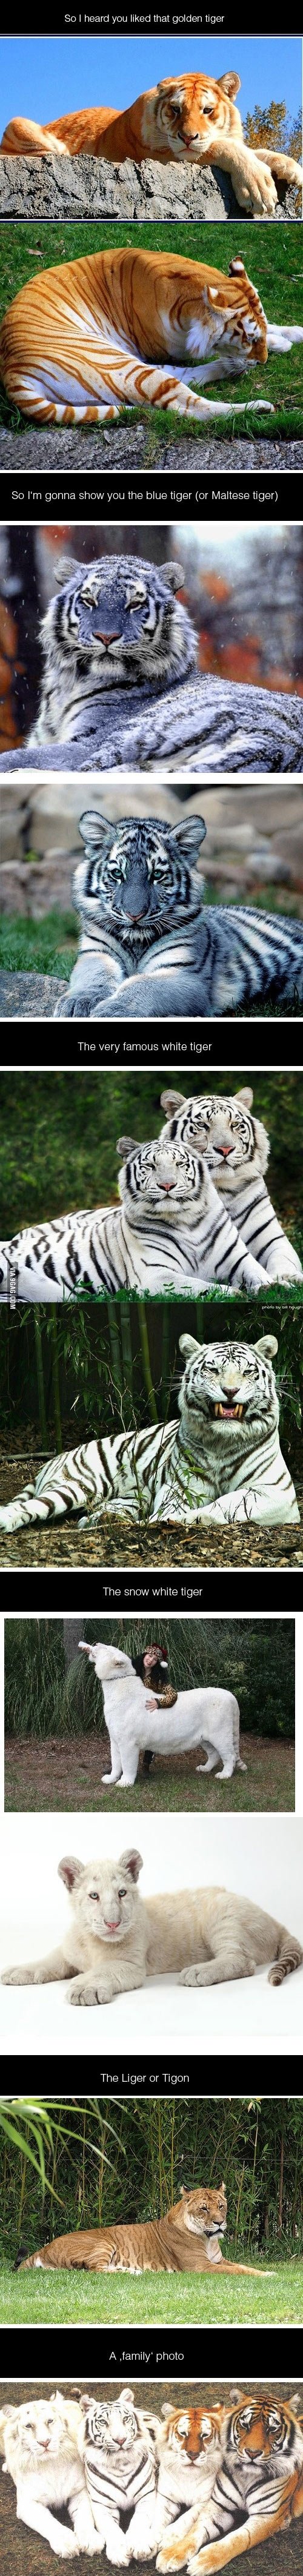 I heard you liked tigers.